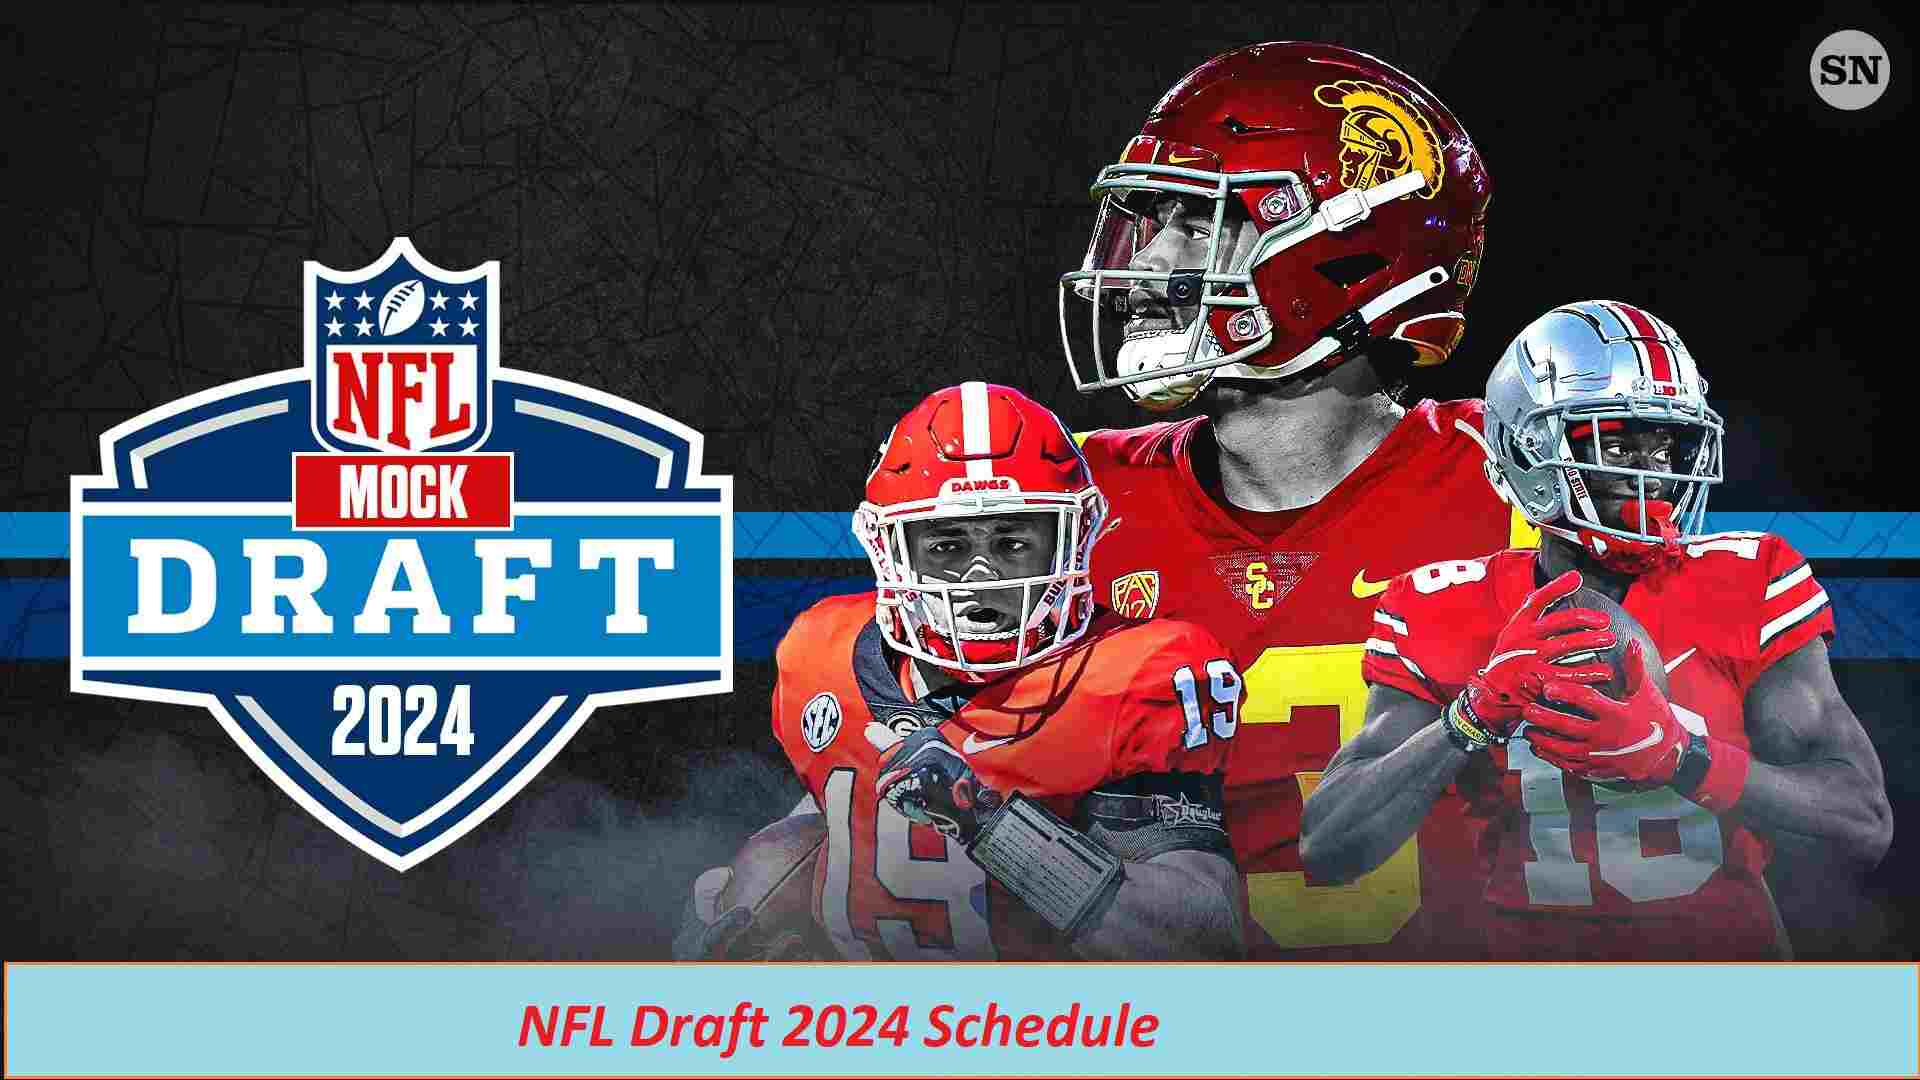 NFL Draft 2024 Schedule